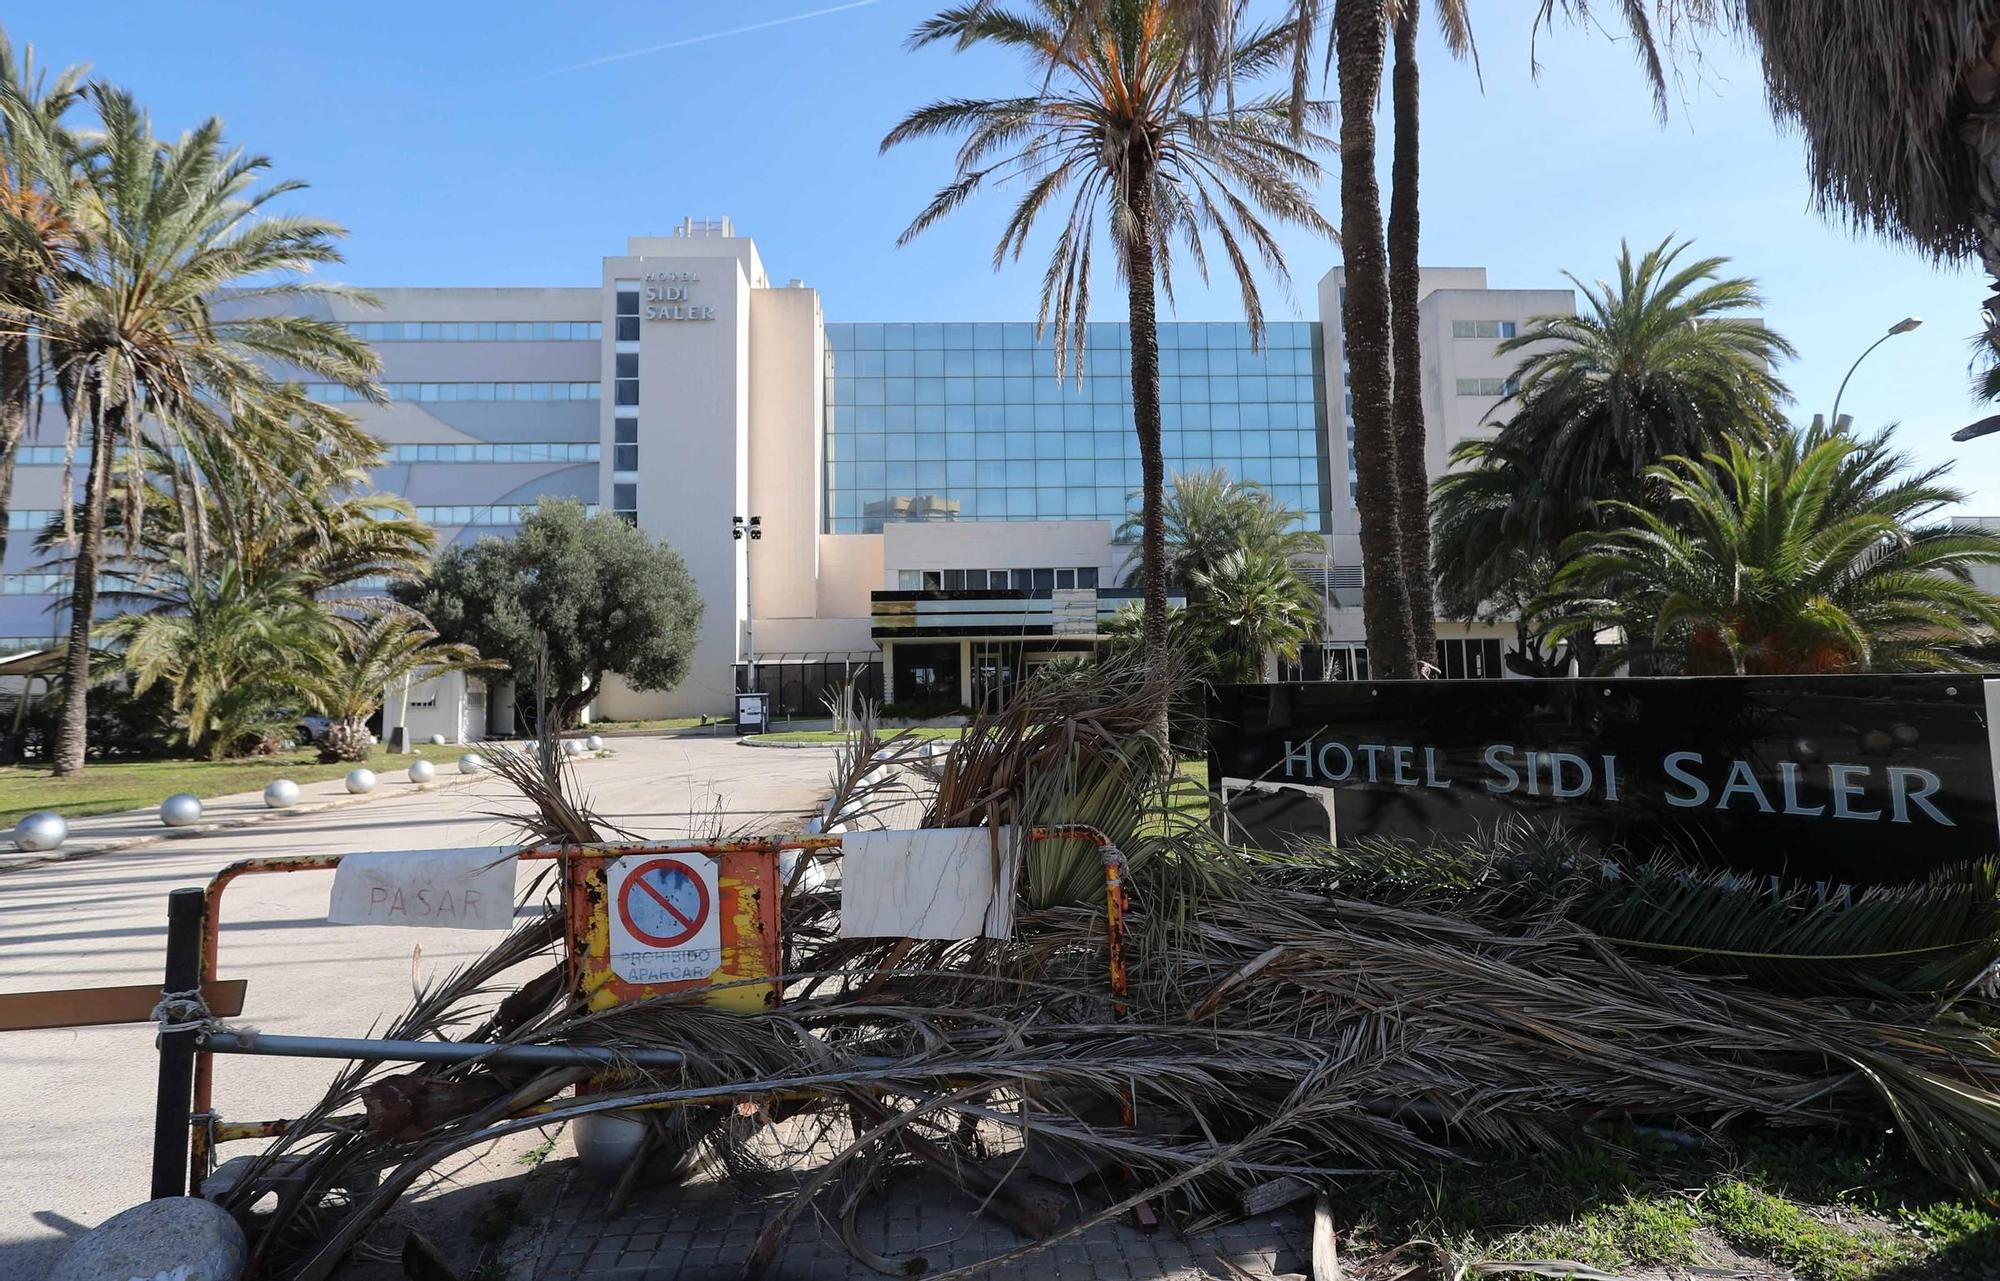 De 5 estrellas lujo al abandono: así está el hotel Sidi Saler hoy